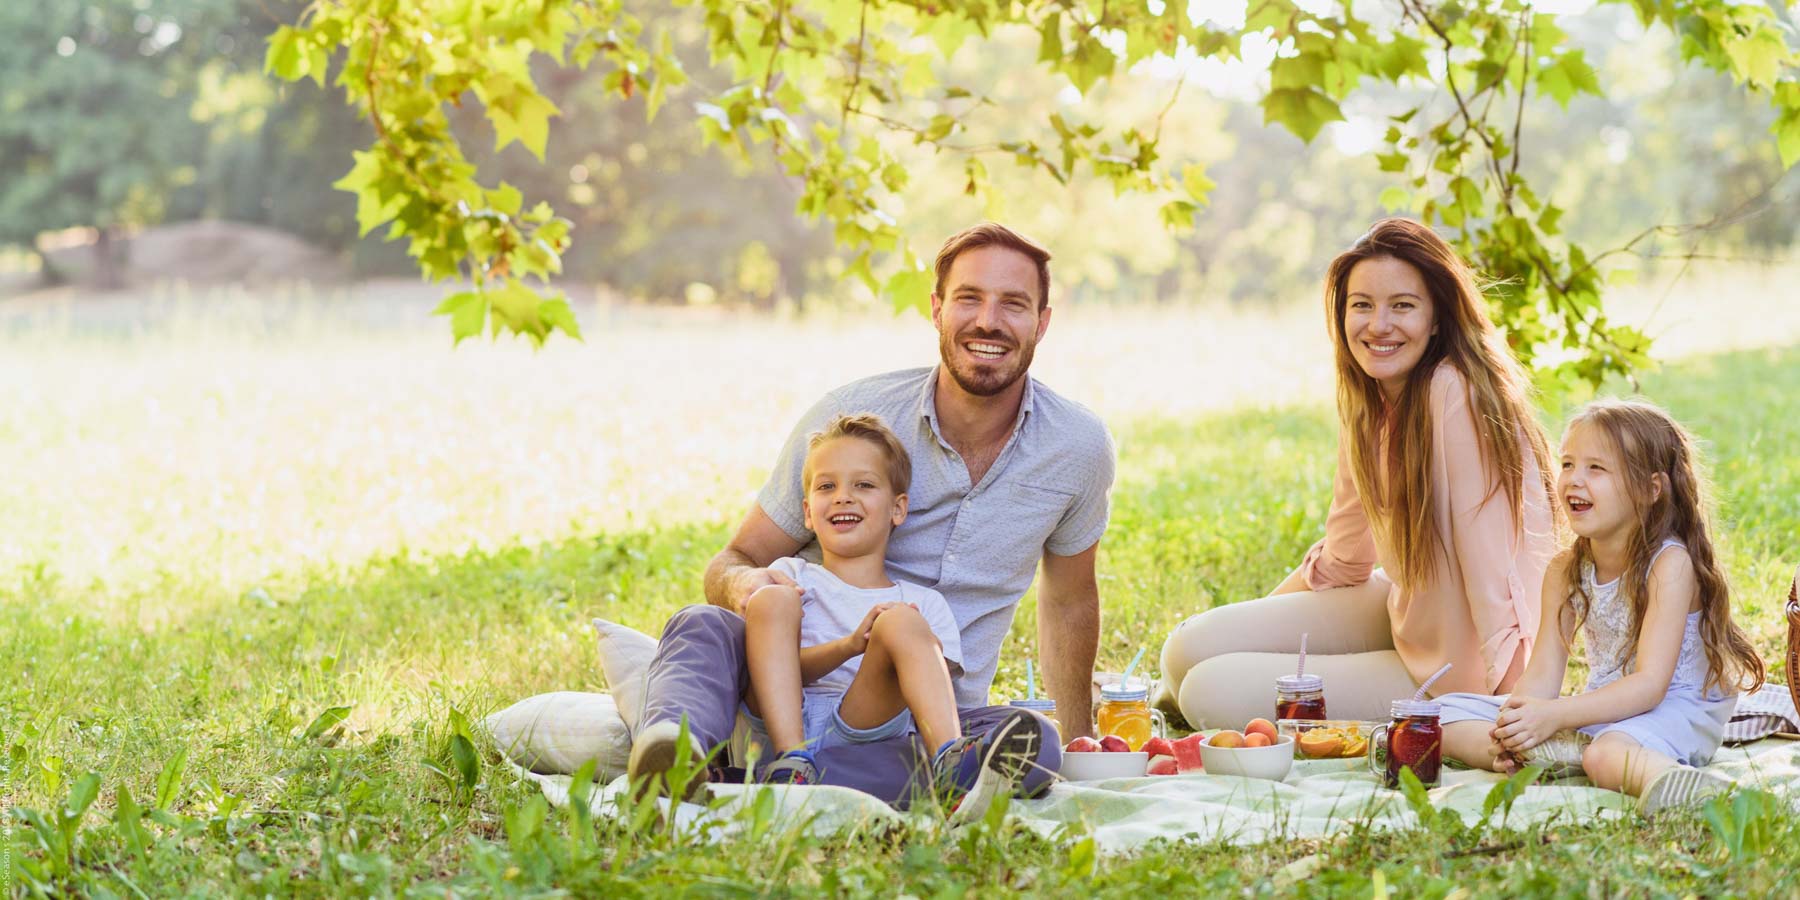 eSeasons family, enjoying Summer picnic in the park